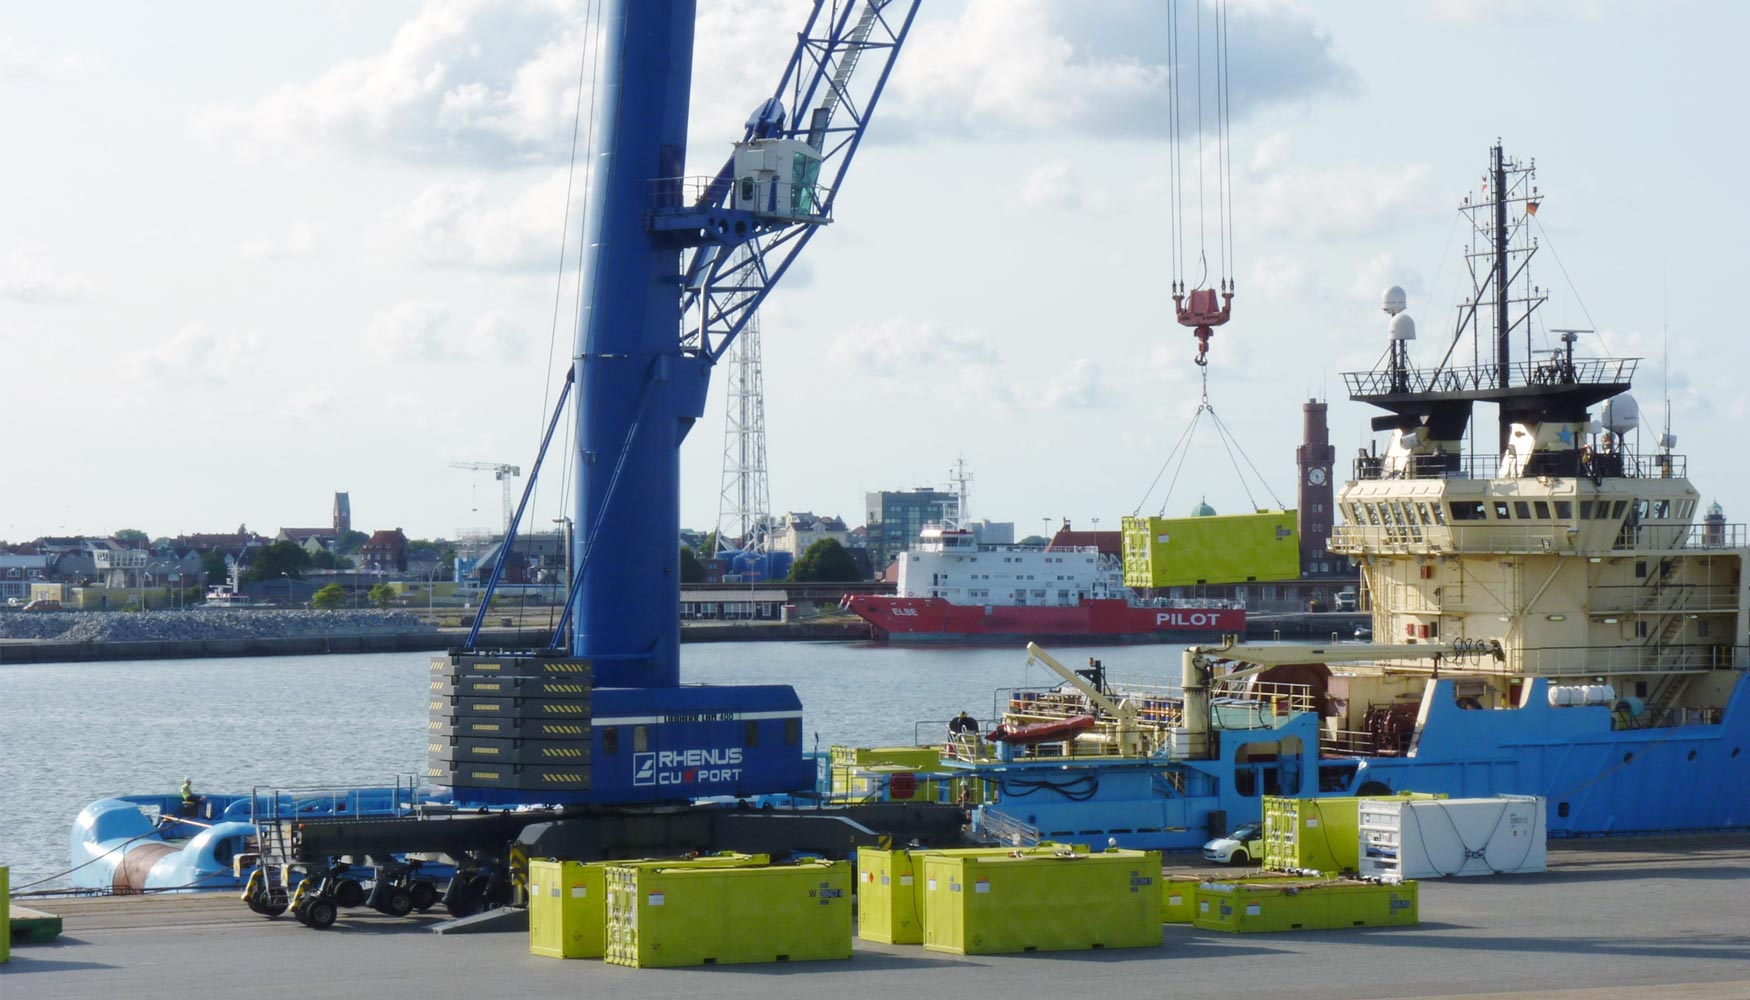 Cuxport ha firmado un acuerdo con Siemens para dar cobertura a las operaciones logsticas en las plataformas marinas...